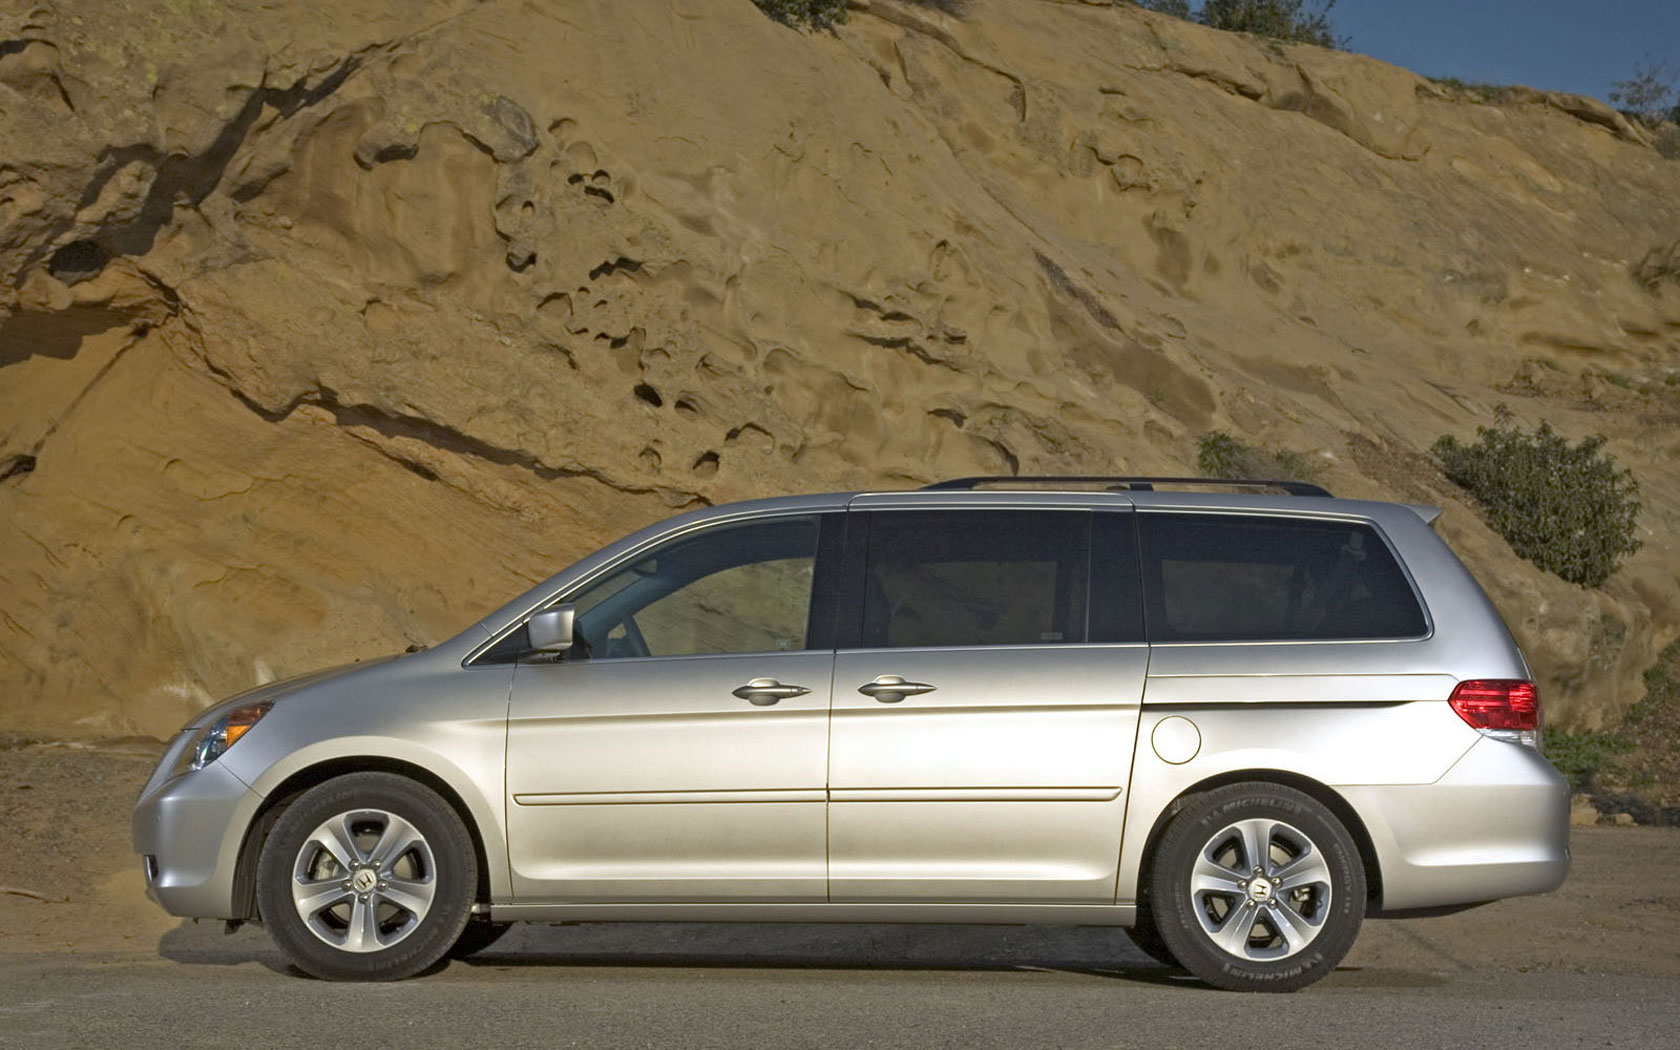  Honda Odyssey (2007-2008)